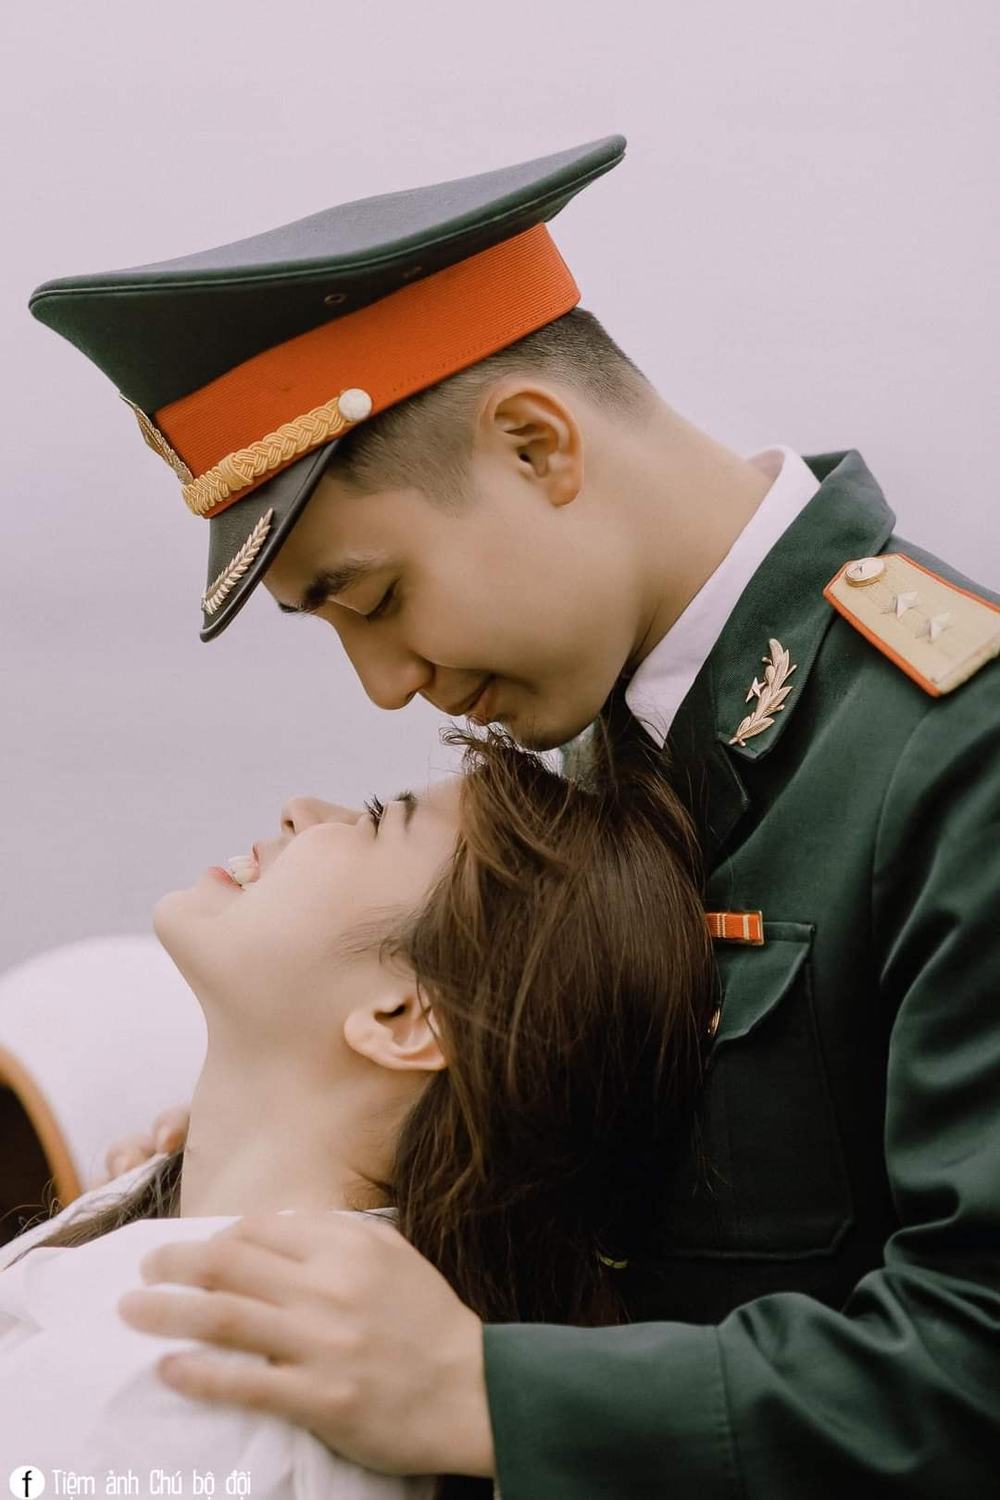 Tình yêu người lính - một tình cảm đặc biệt, thể hiện sự kiên cường và tình người. Hình ảnh về những cặp đôi thật đẹp trong các trang phục quân đội chắc chắn sẽ khiến bạn cảm thấy ấm lòng và đầy yêu thương.